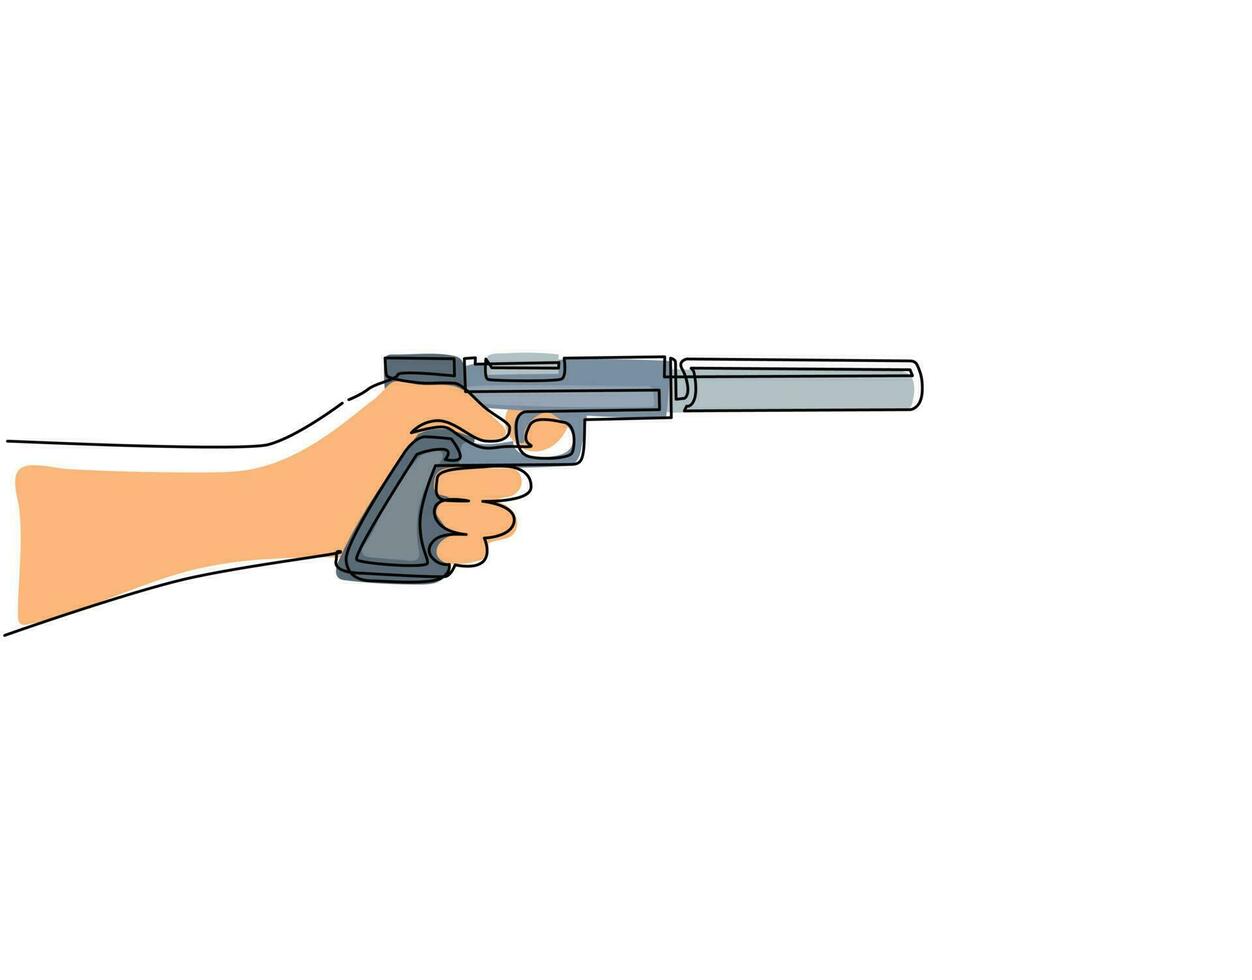 uma pistola de mão de desenho de linha única com silenciador. arma de gangster da máfia com silenciador, silhueta de revólver, arma isolada no branco. ilustração em vetor gráfico de desenho de linha contínua moderna